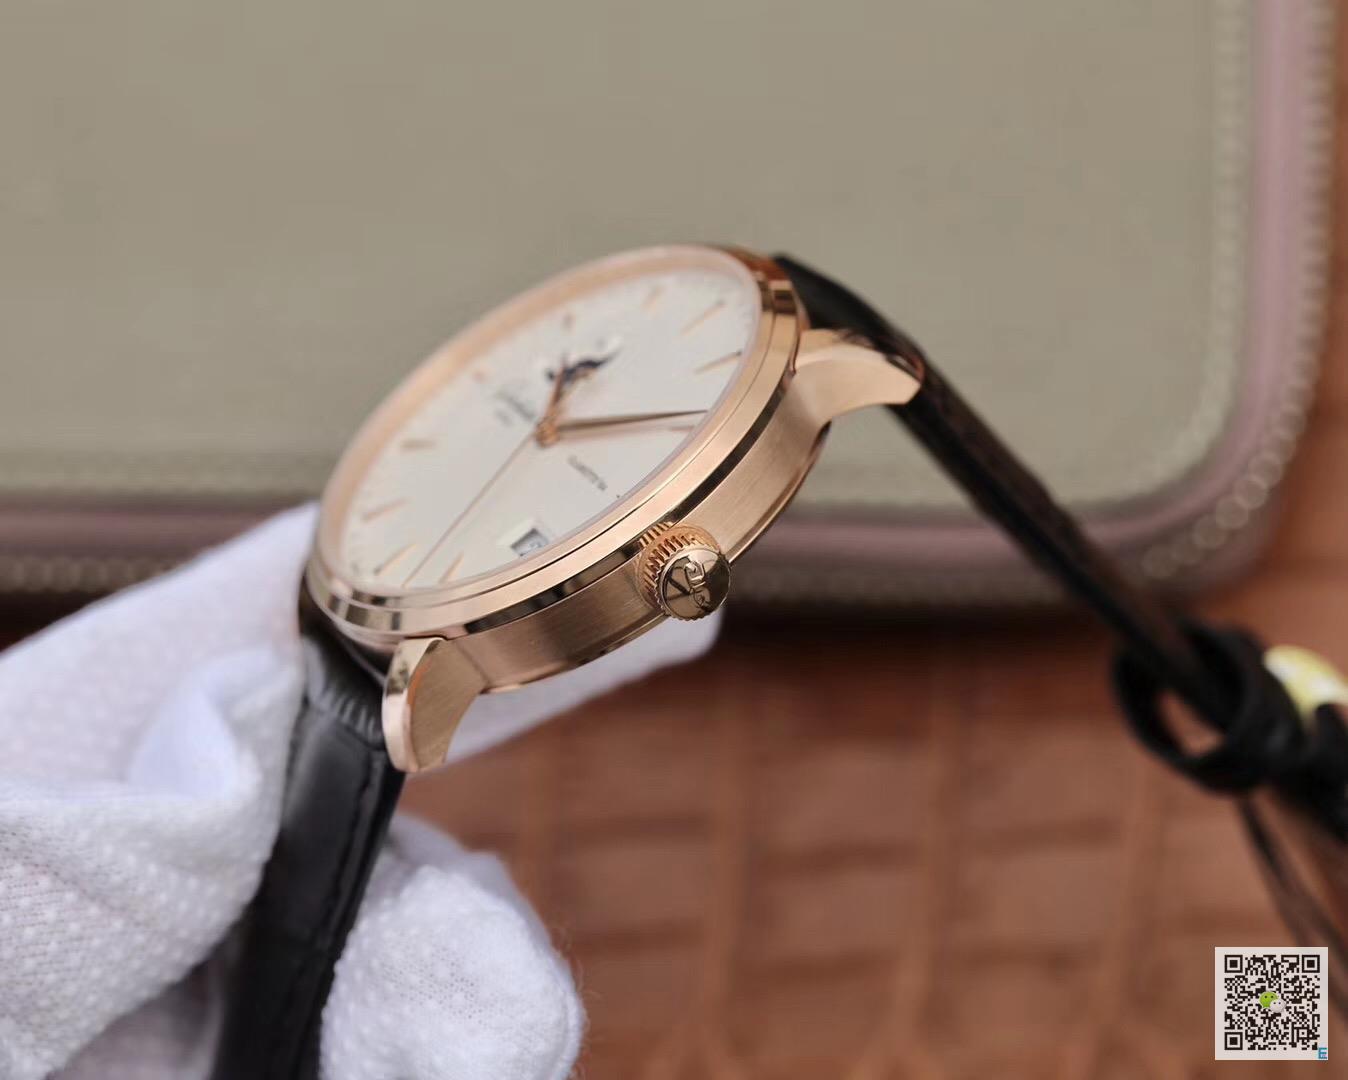 格拉苏蒂原创议员大日历月相腕表 格拉苏蒂月相男表机械手表价格_多少钱_报价